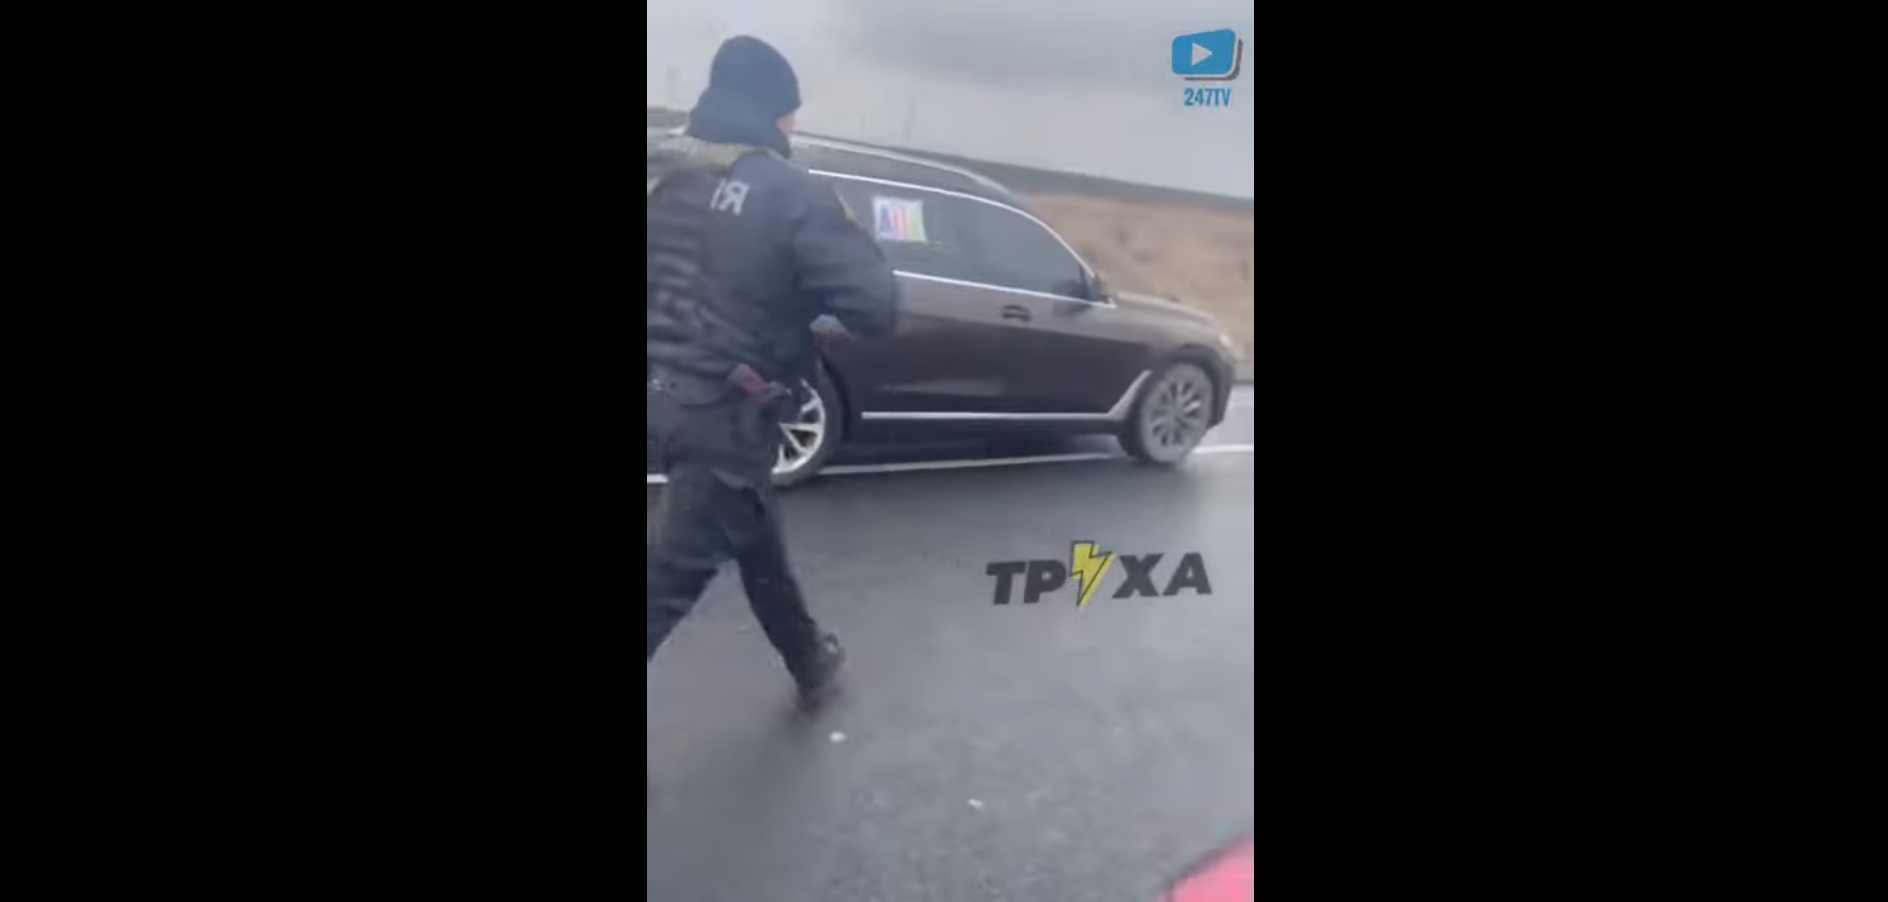 Οι Ουκρανοί ολιγάρχες εγκαταλείπουν το Κίεβο με υπερπολυτελή αυτοκίνητα συνοδεία της αστυνομίας του καθεστώτος